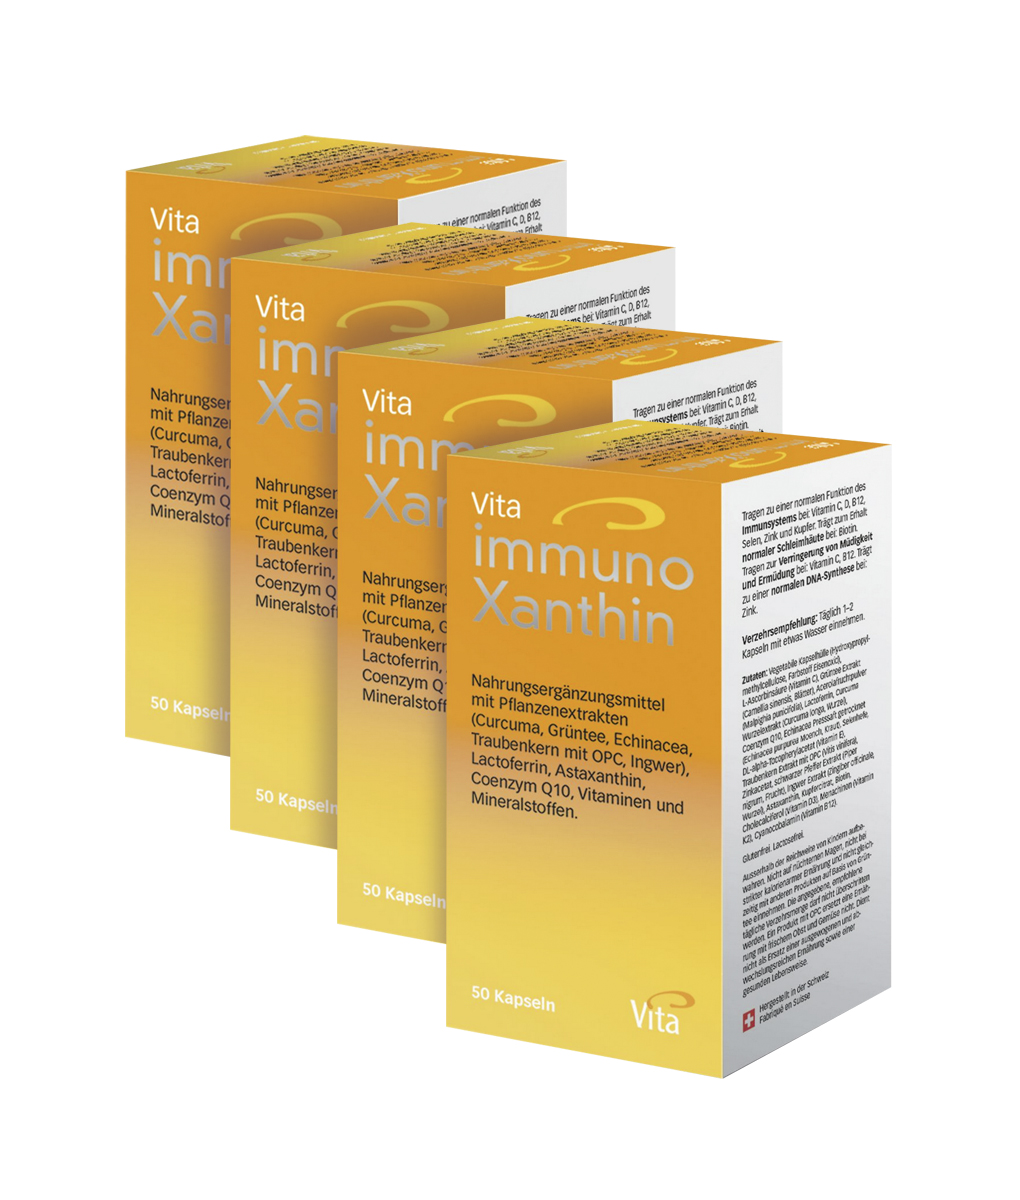 Vita Immunoxanthin, Four pack